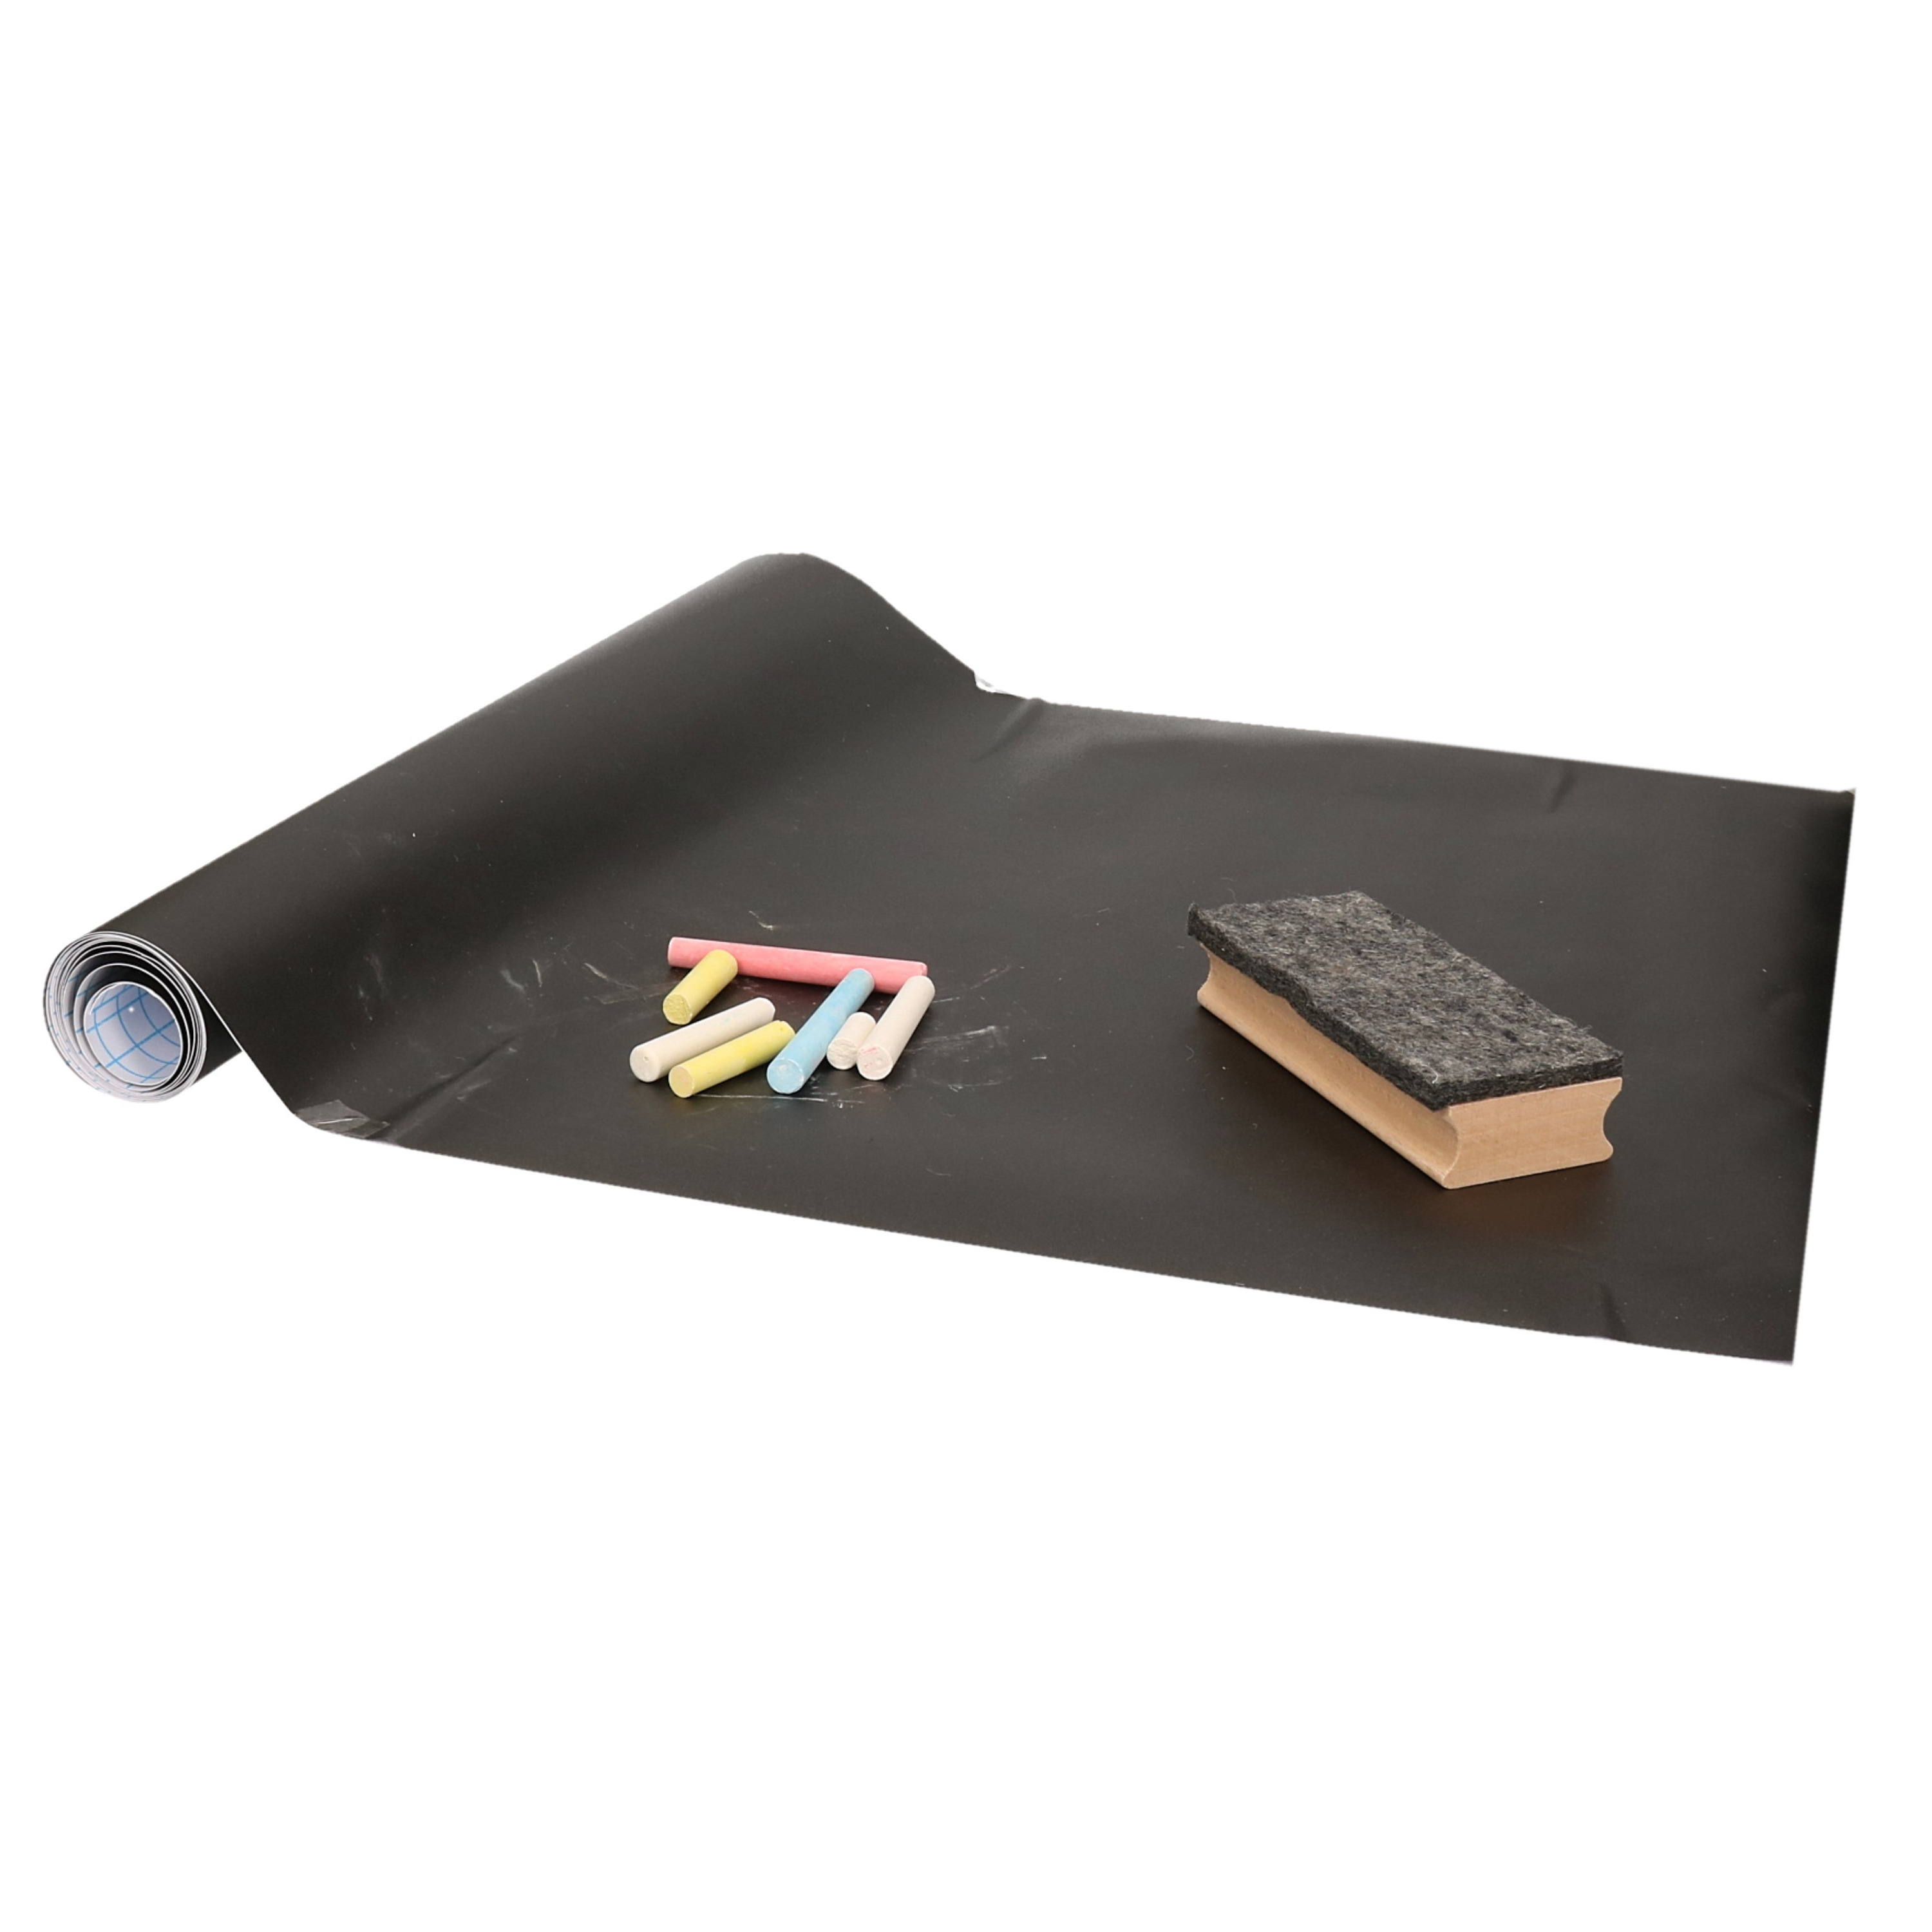 Kinder schoolbord - zelfklevend folie - 45 x 200 cm - incl. krijtjes en wisser -